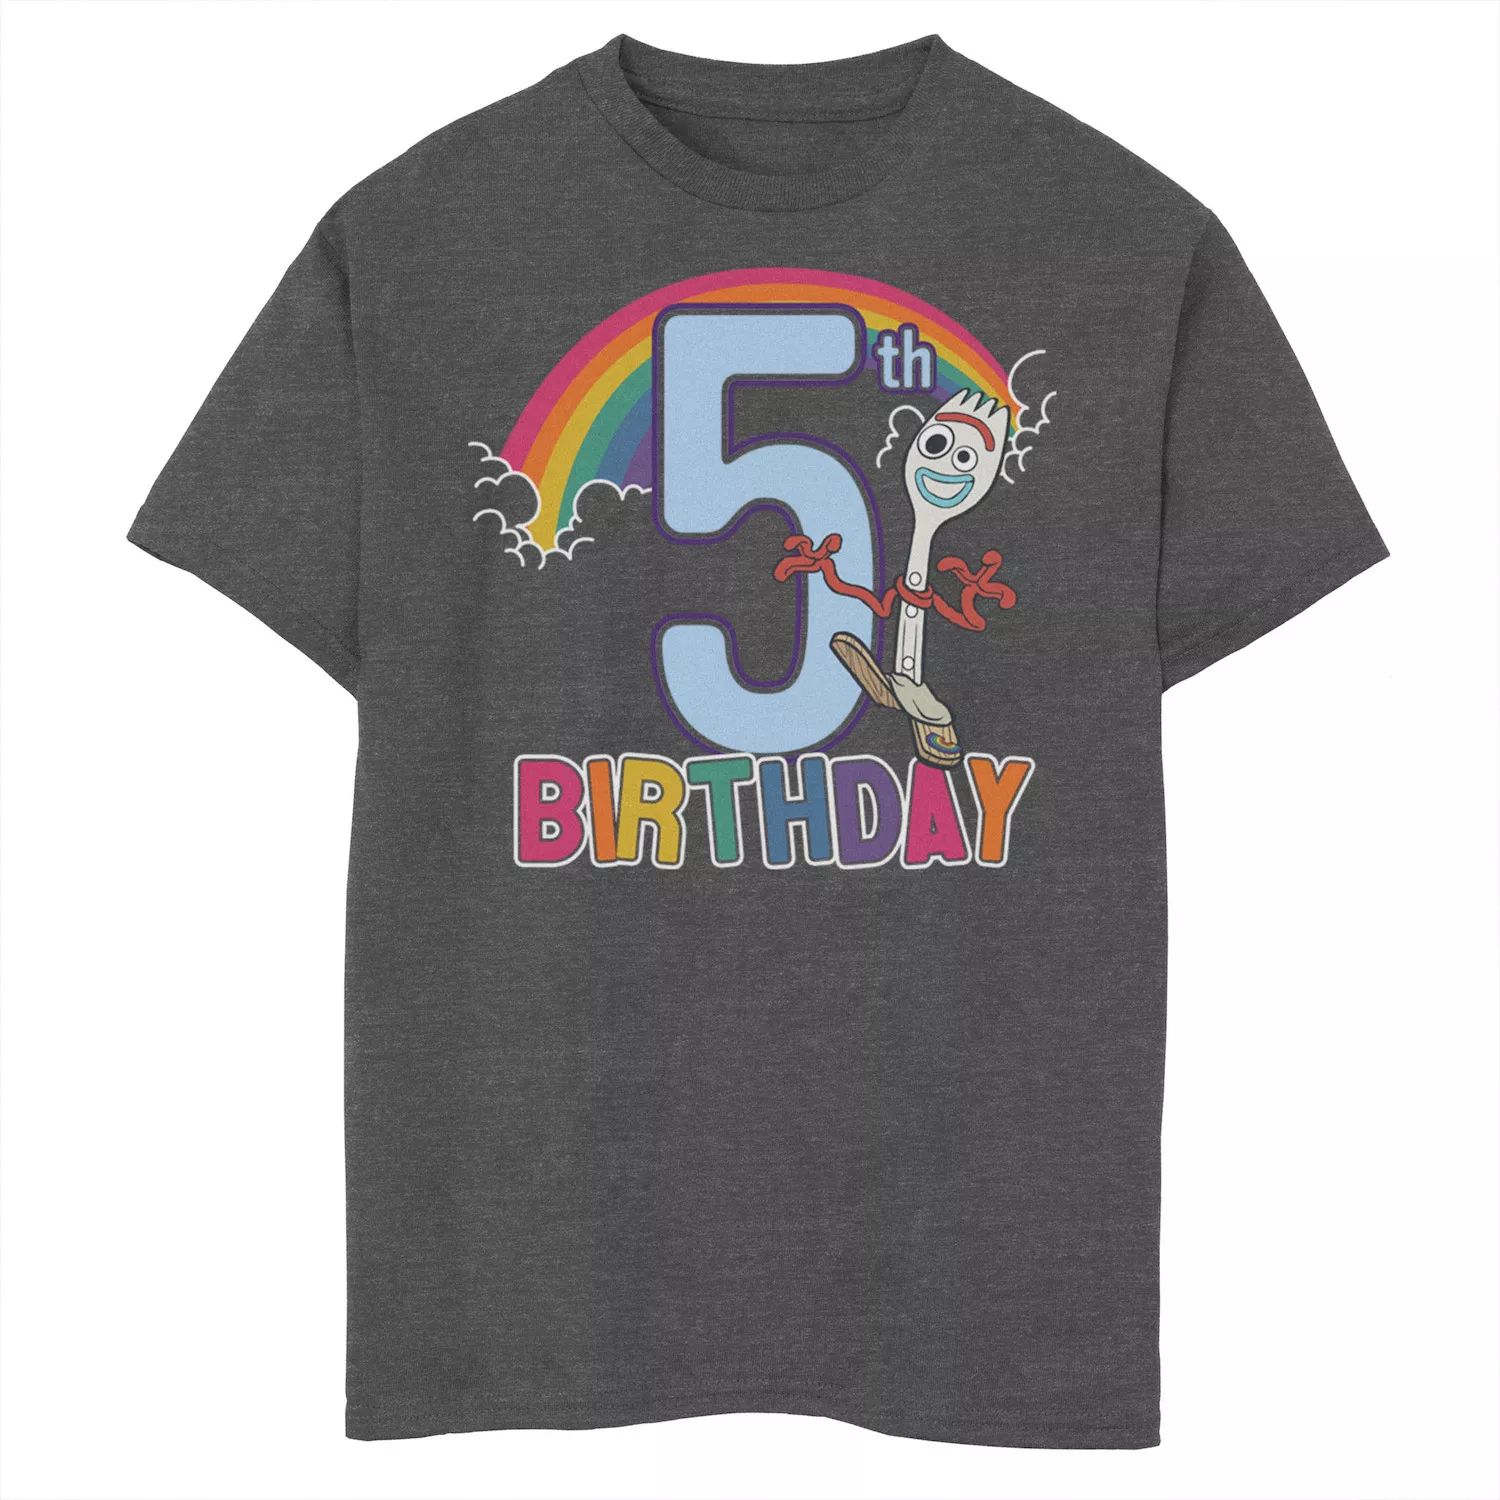 Футболка Forky с рисунком «5th Rainbow» на день рождения для мальчиков 8–20 лет Disney/Pixar «История игрушек 4» Disney / Pixar футболка forky с рисунком на 3 й день рождения для мальчиков 8–20 лет disney pixar история игрушек 4 disney pixar